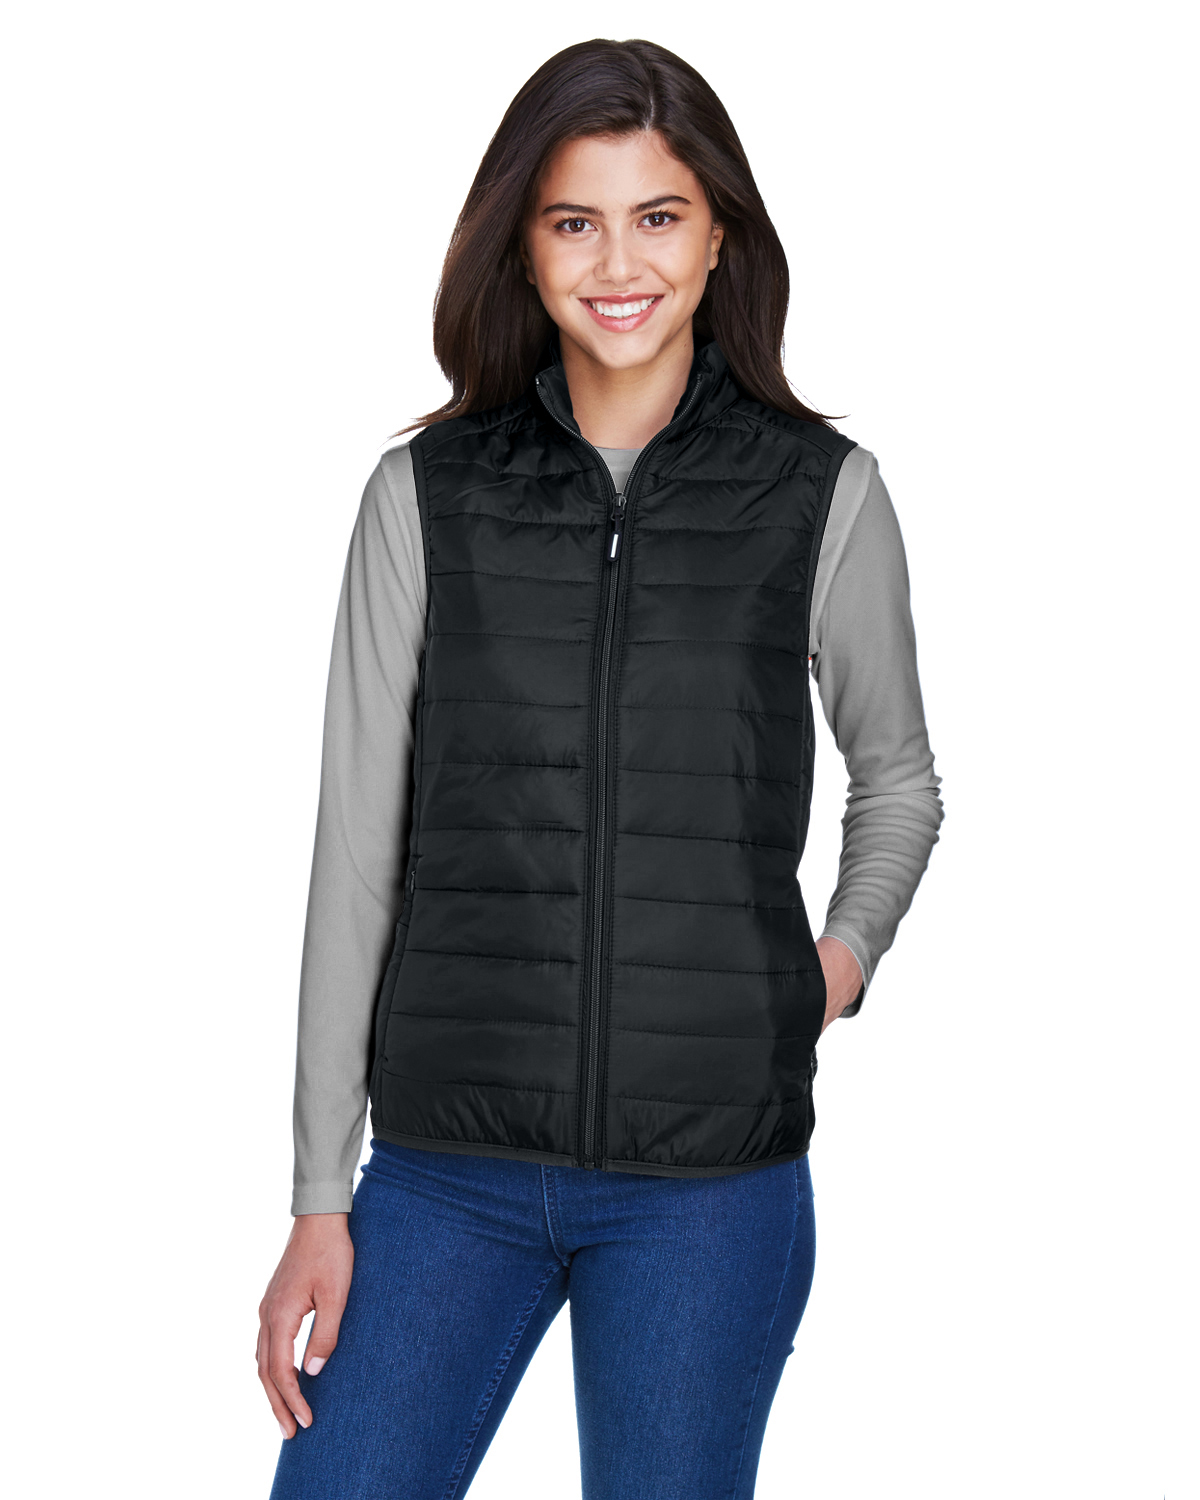 Core 365 CE702W, Ladies' Prevail Packable Puffer Vest